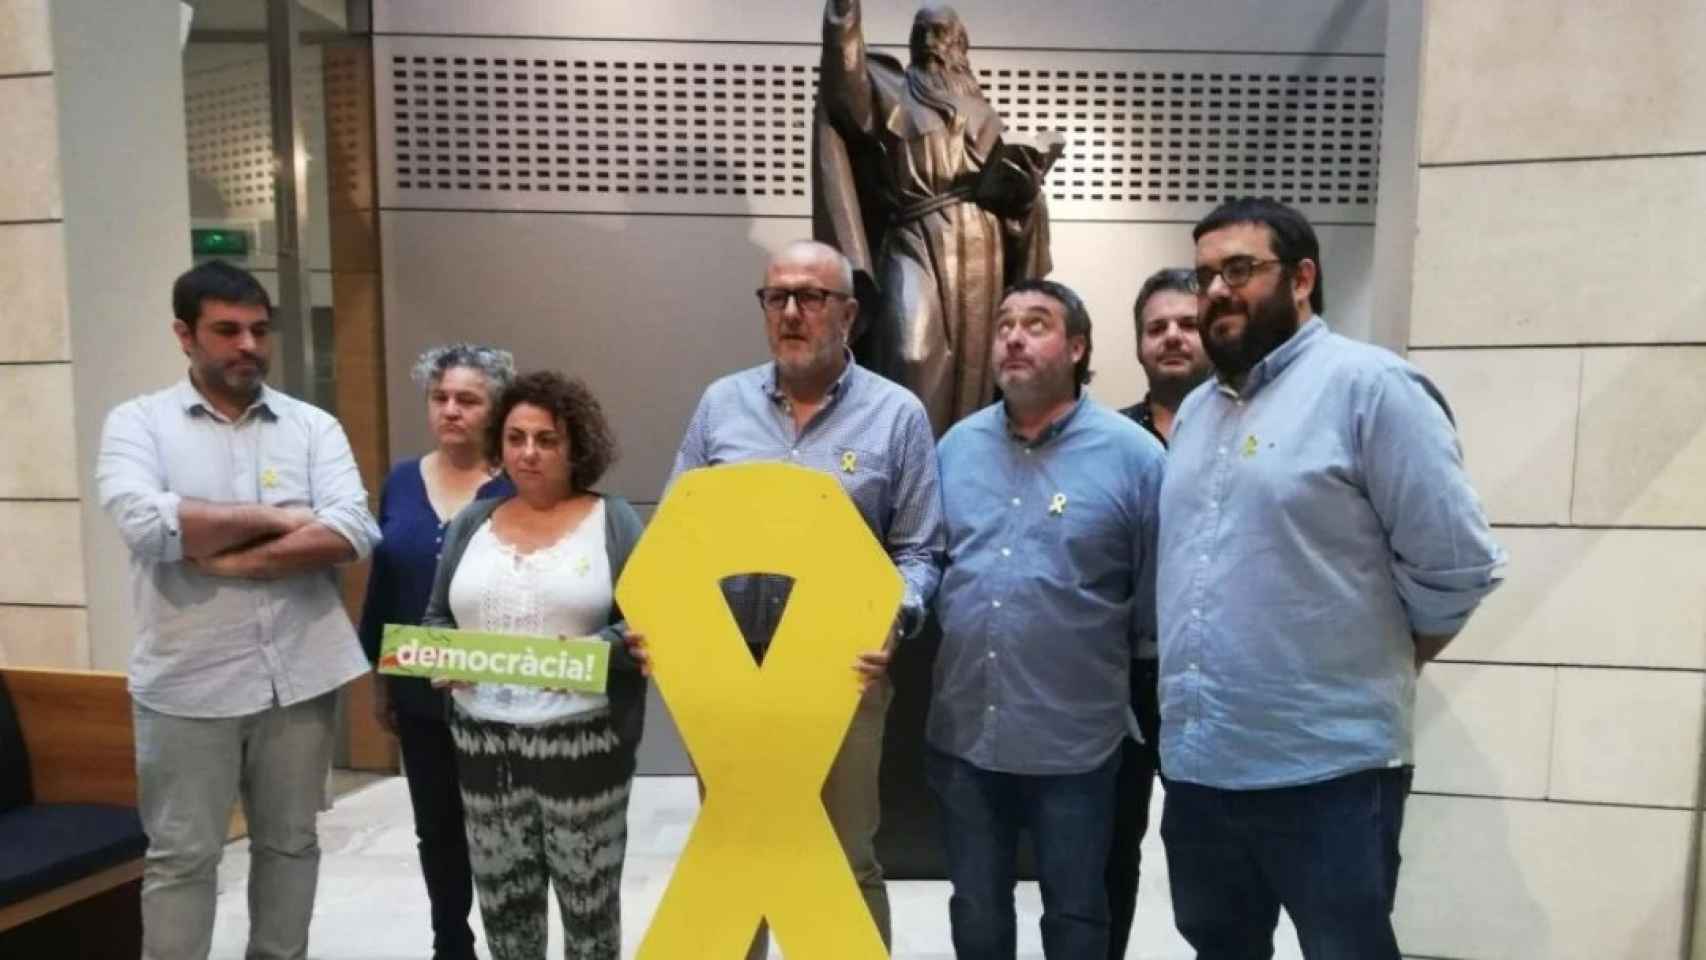 Varios diputados autonómicos de Més per Mallorca, encabezados por Miquel Ensenyat, en un acto de apoyo a los condenados por el 1-O.